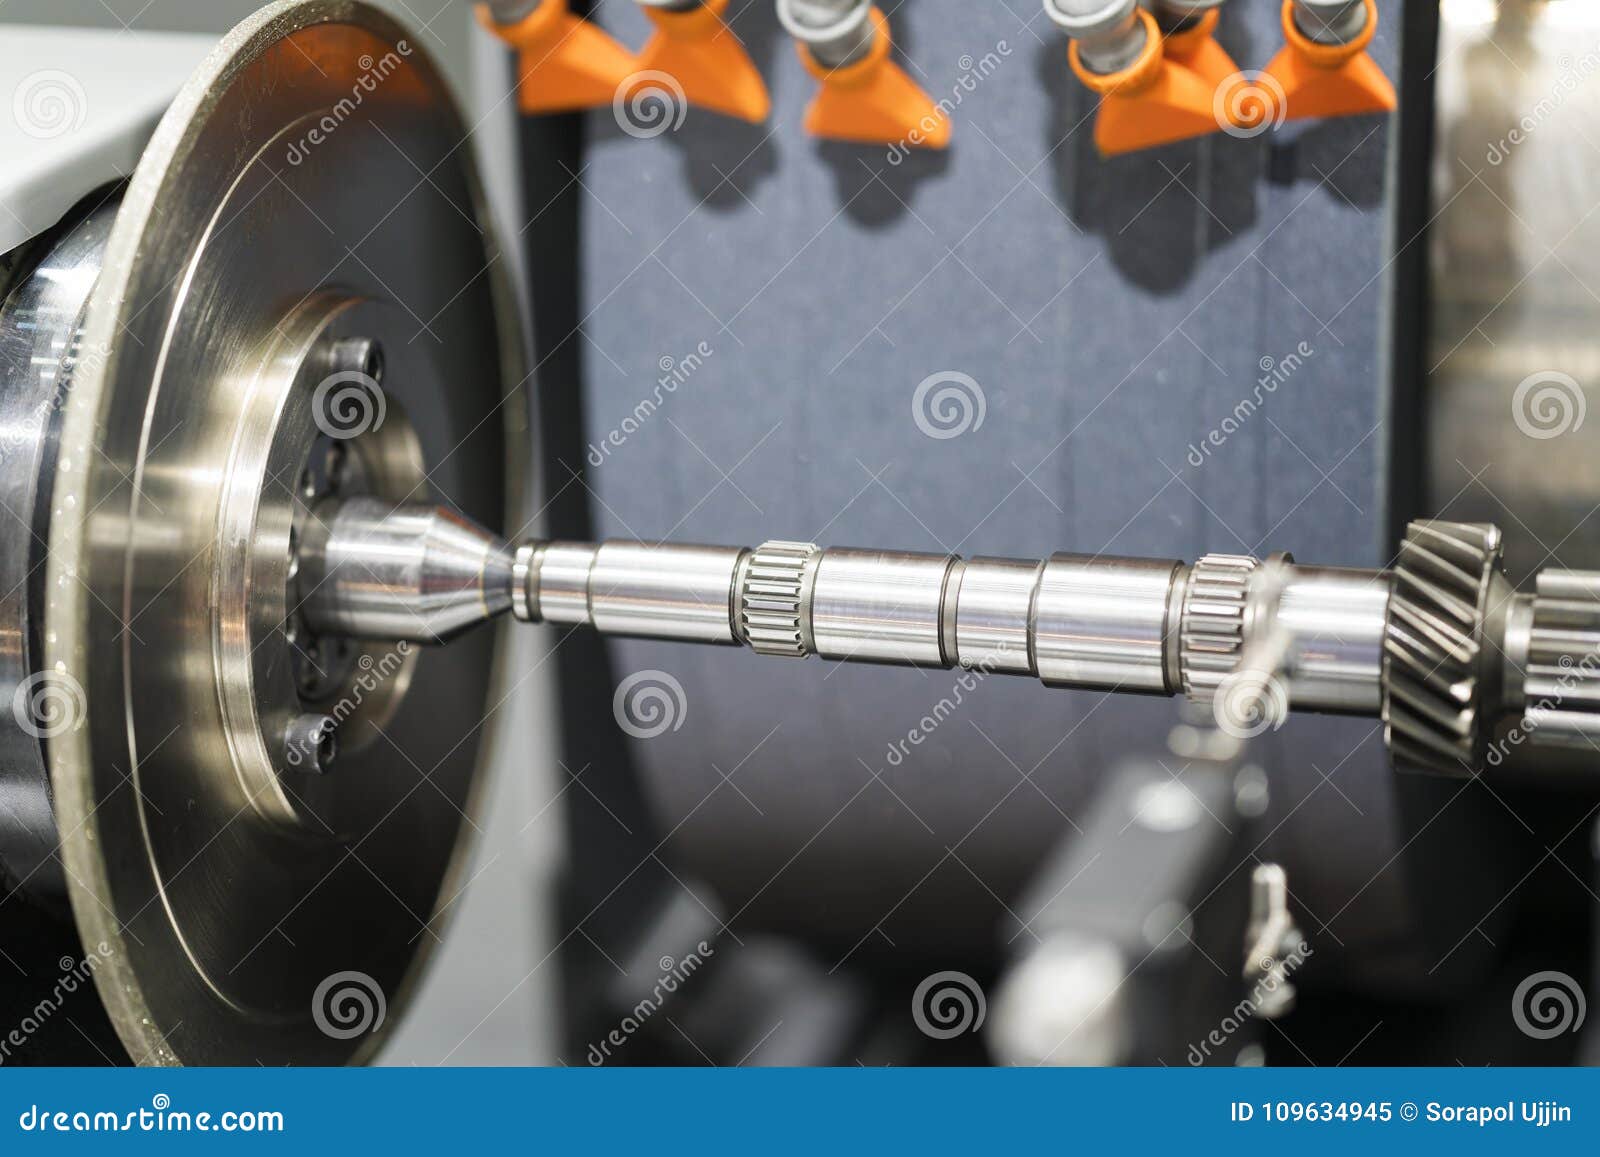 high precision cnc grinding automotive part